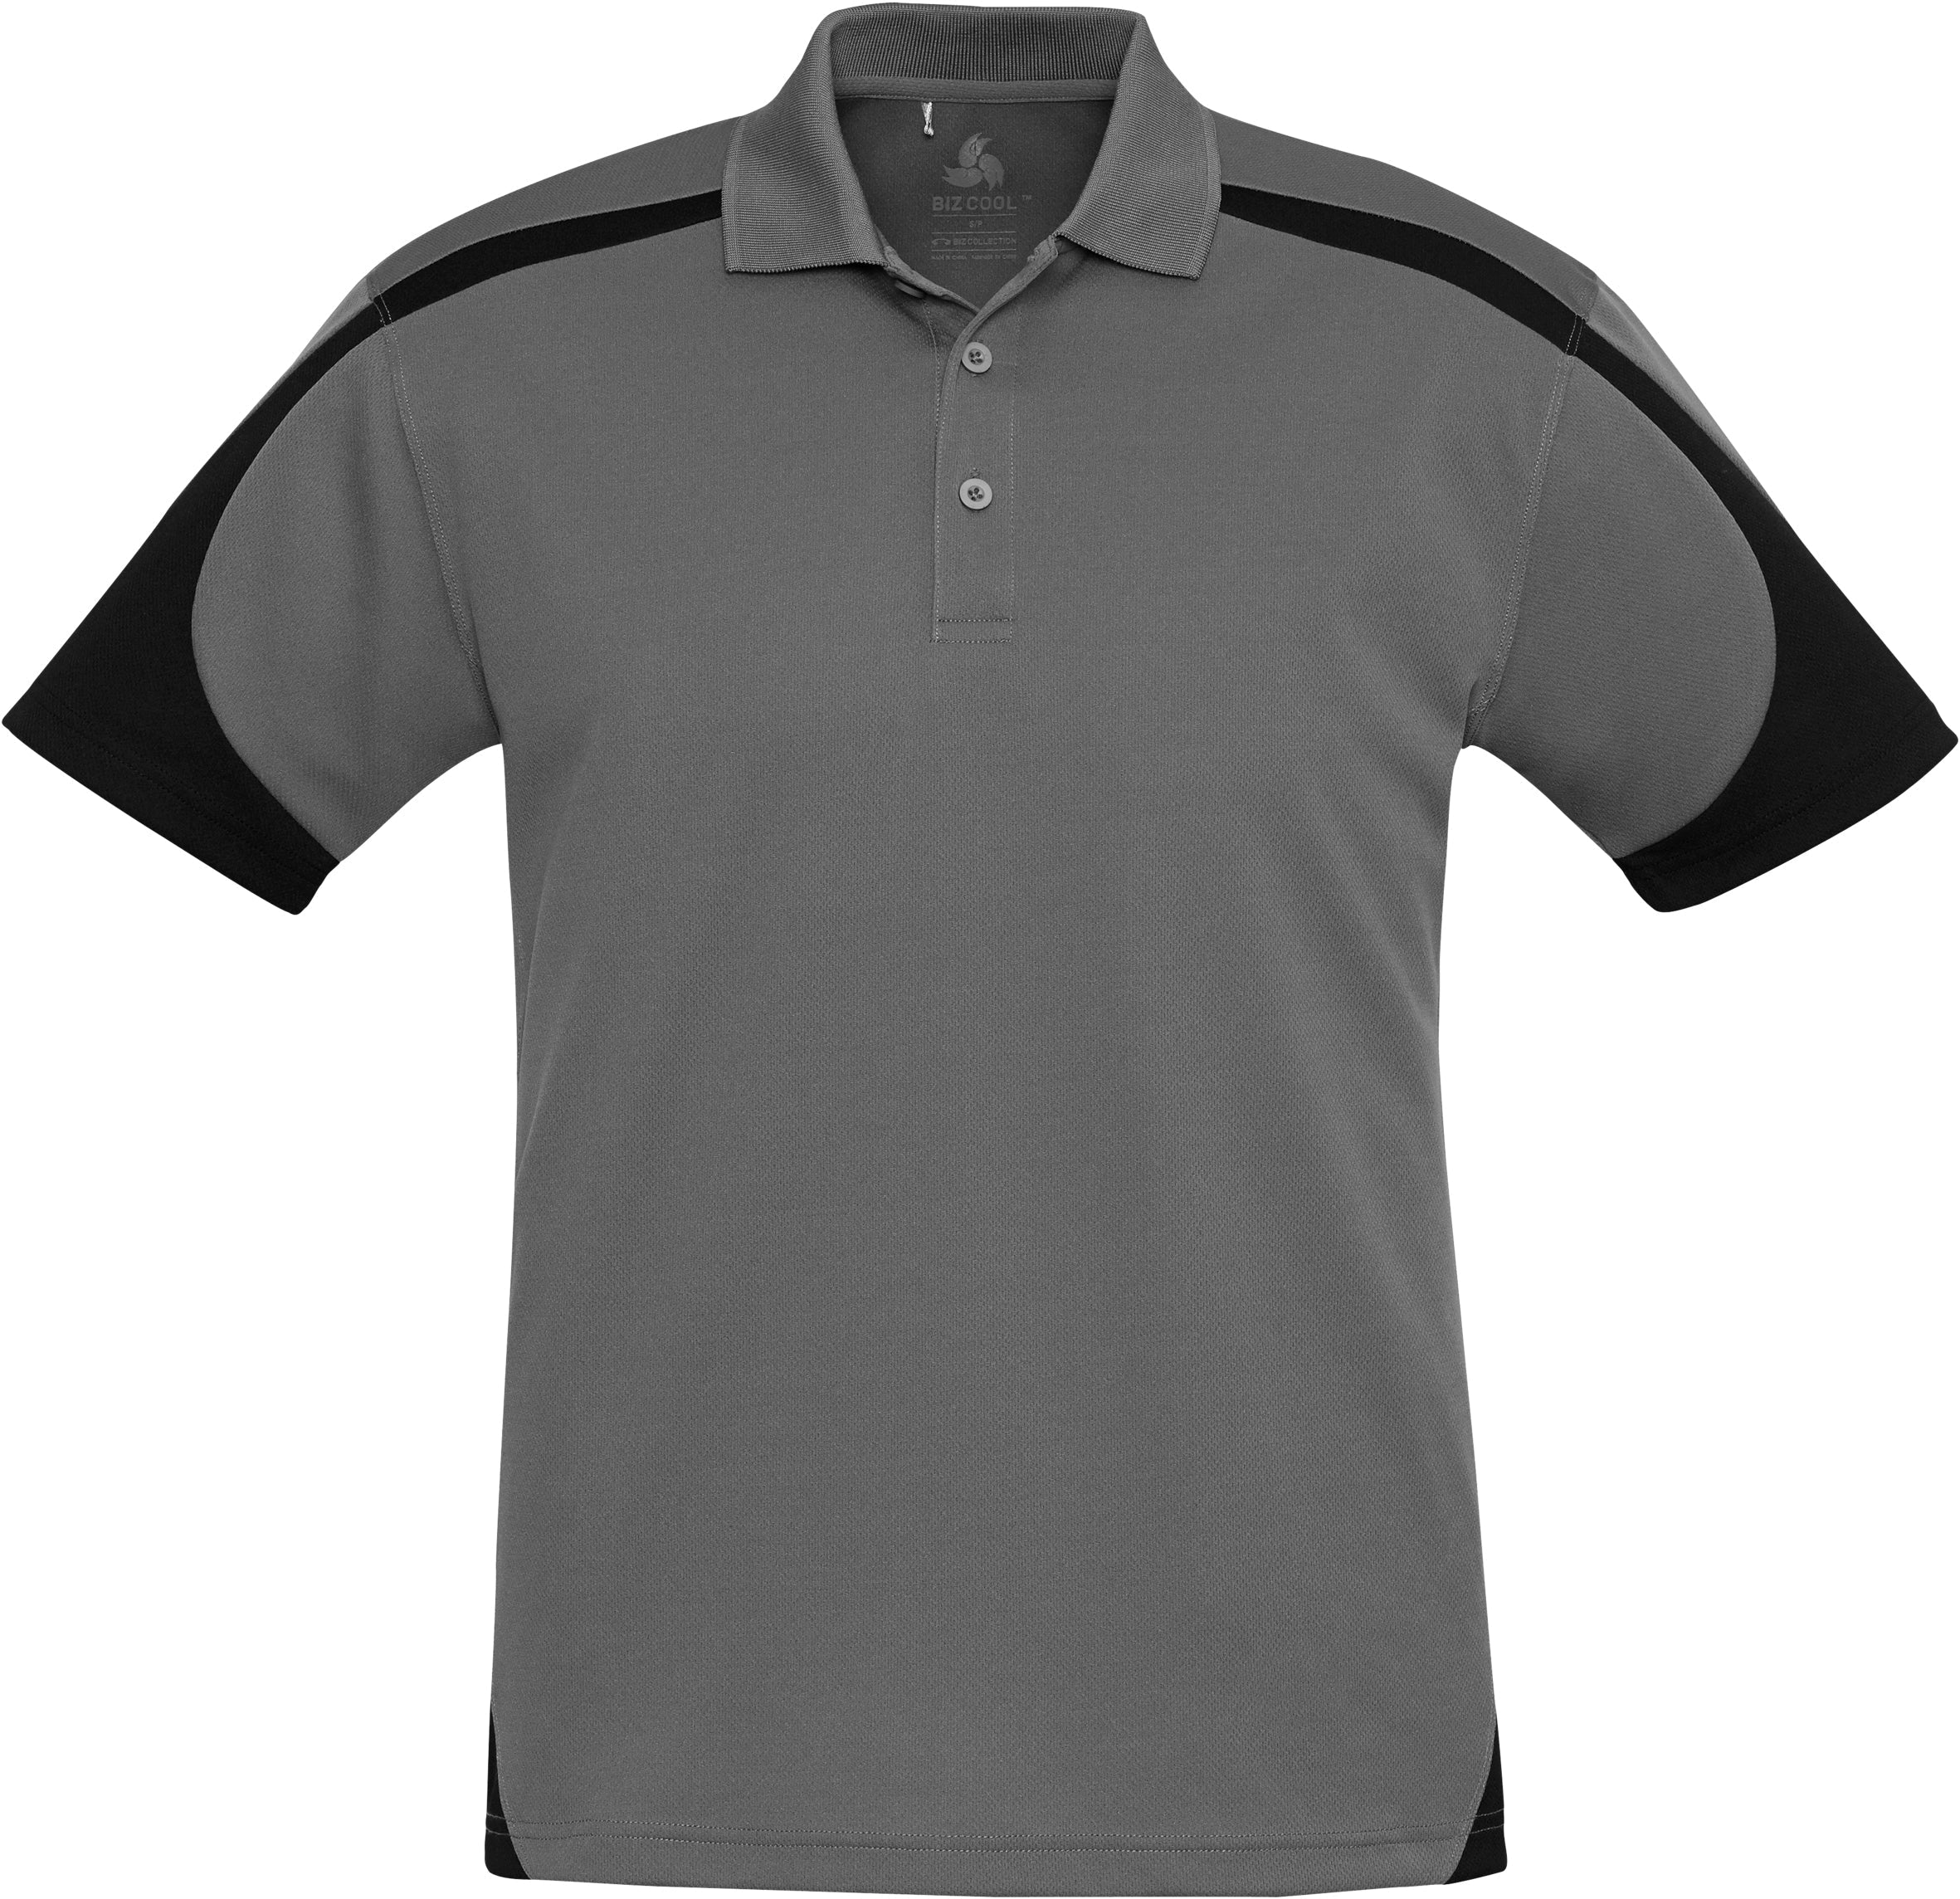 Mens Talon Golf Shirt-2XL-Grey-GY